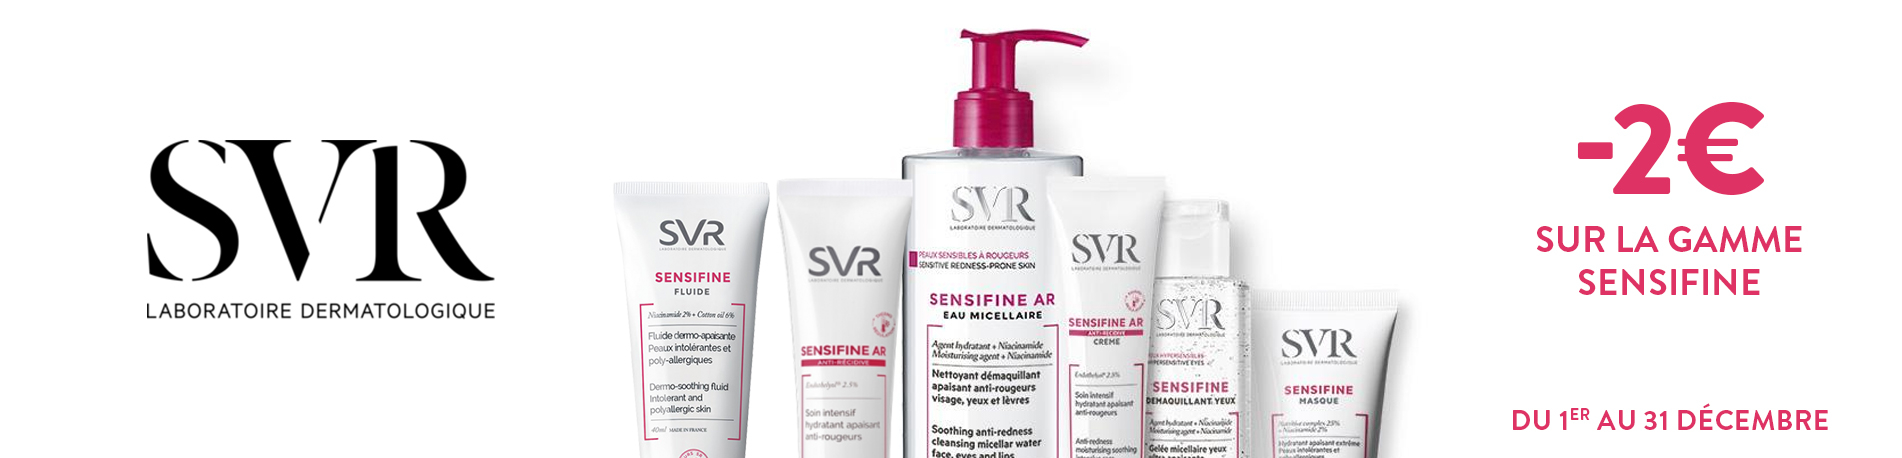 Promotion SVR Sensifine